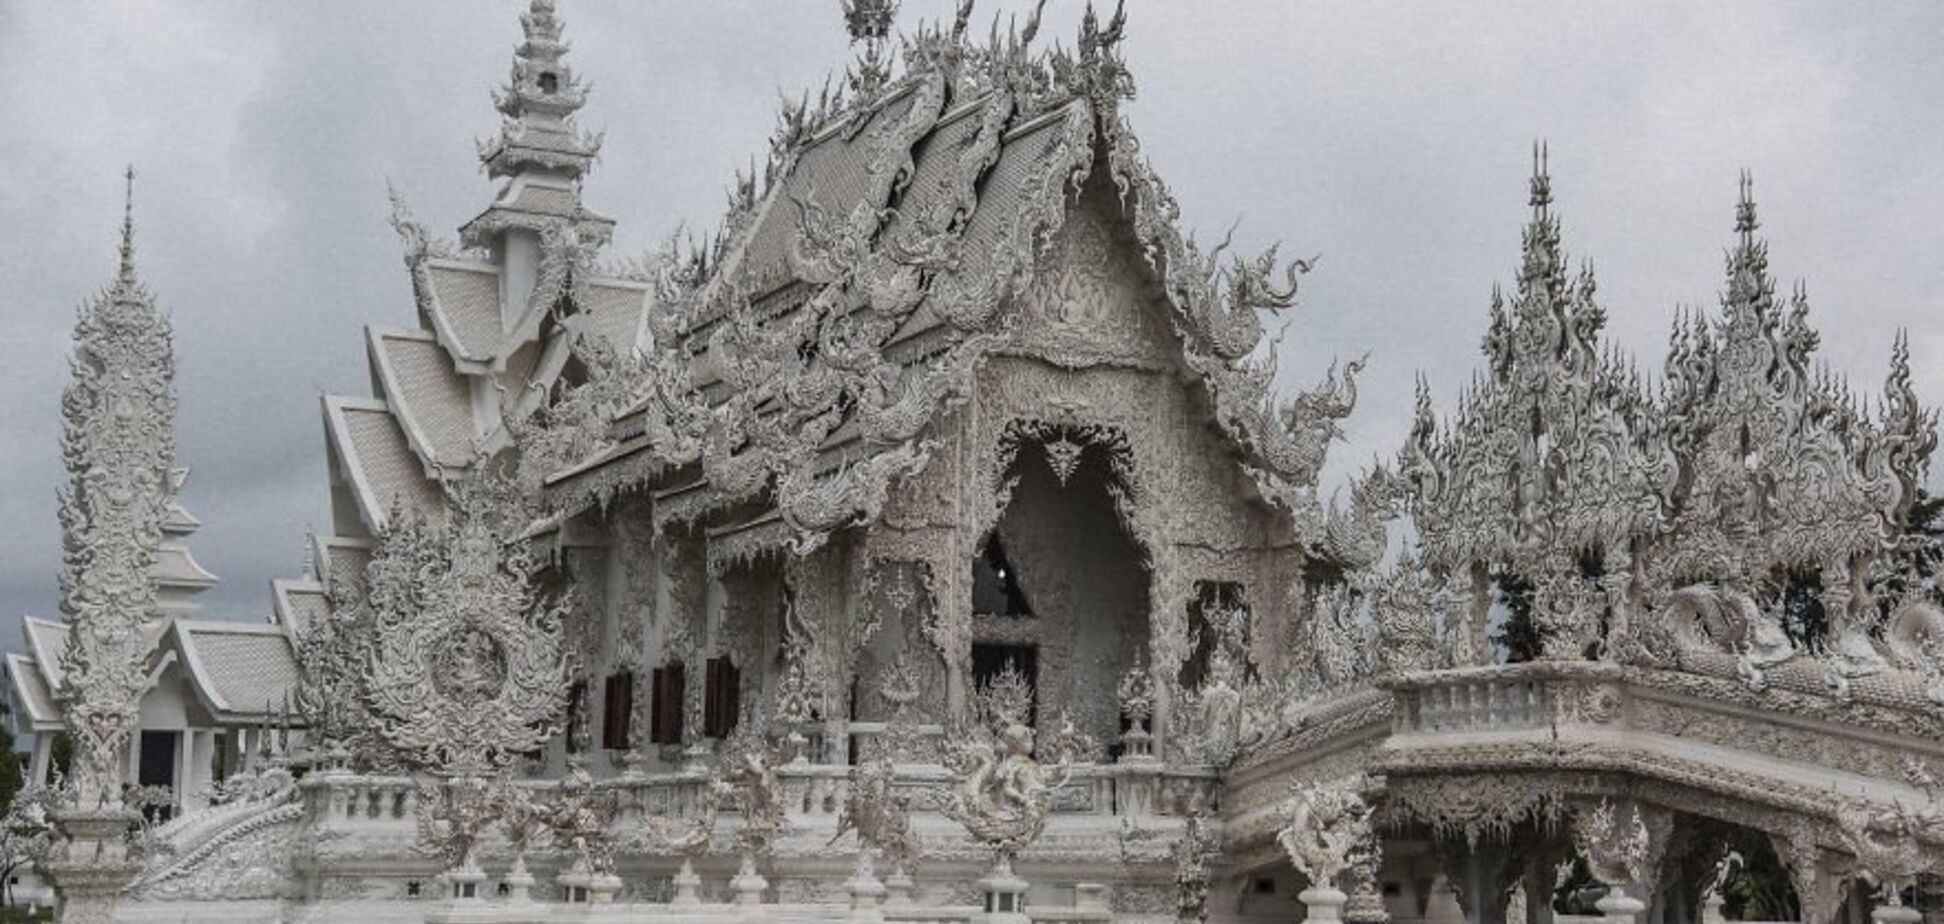 Ліпнина і каміння: як виглядає унікальний храм в Таїланді